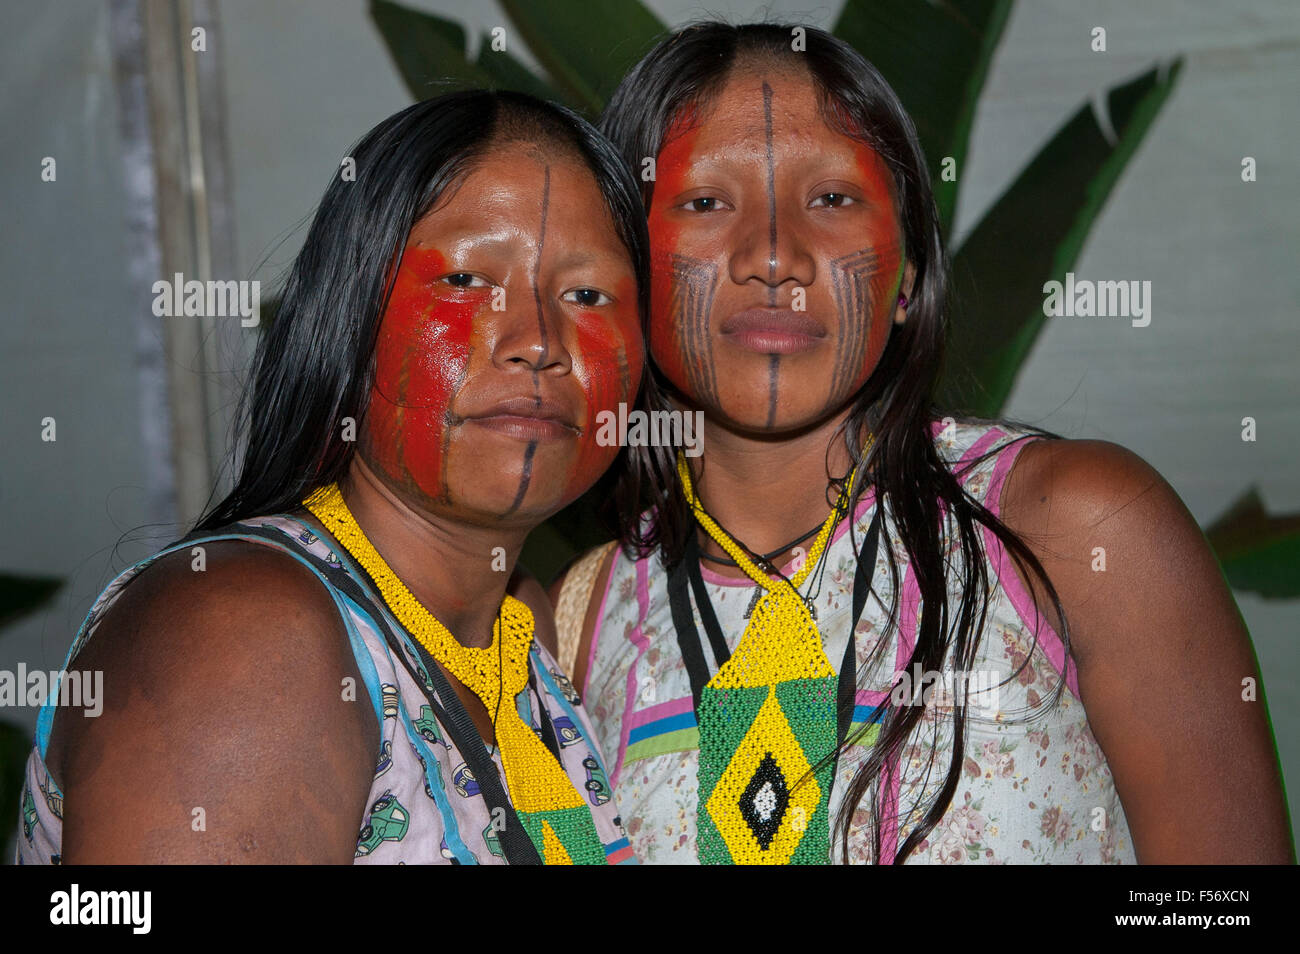 Palmas, Brtazil. 28 Oct, 2015. Dos mujeres indígenas Kayapo orgullosos posan para una foto en los Juegos Indígenas Internacionales, en la ciudad de Las Palmas, el estado de Tocantins, Brasil. Crédito: Sue Cunningham Photographic/Alamy Live News Foto de stock